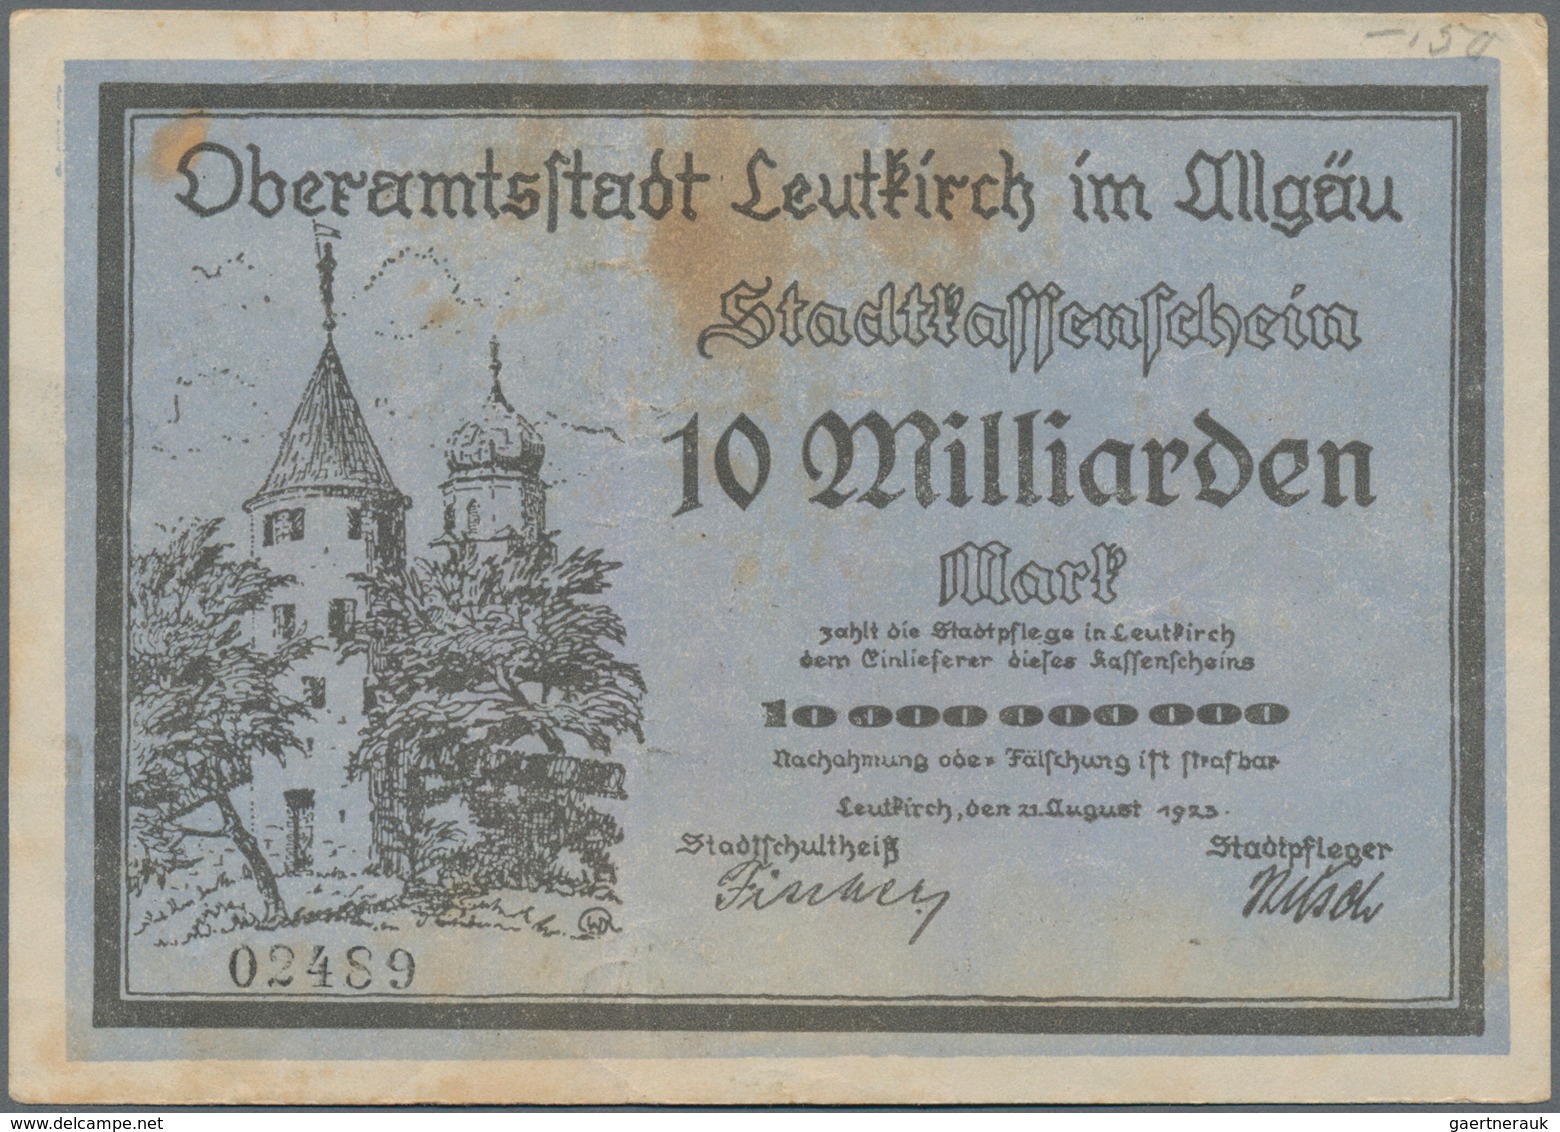 Deutschland - Notgeld - Württemberg: Leutkirch, Amtskörperschaft, 500 Tsd. (A), 1 (A und B), 5 (A),